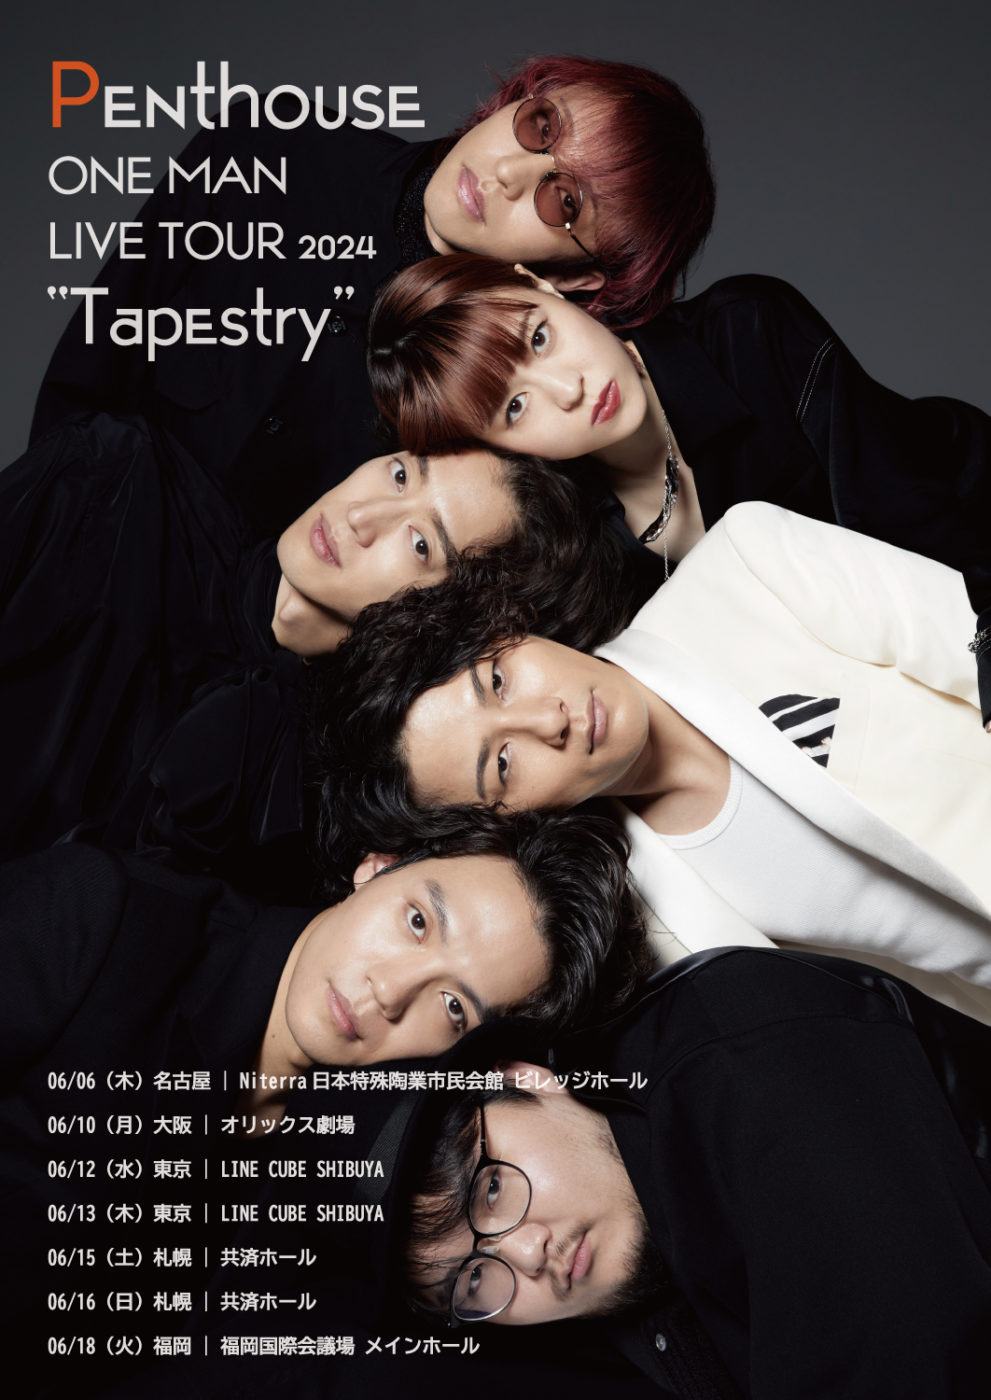 6月13日(木)Penthouse ONE MAN LIVE TOUR 2024 “Tapestry” at 東京 LINE CUBE SHIBUYA day2